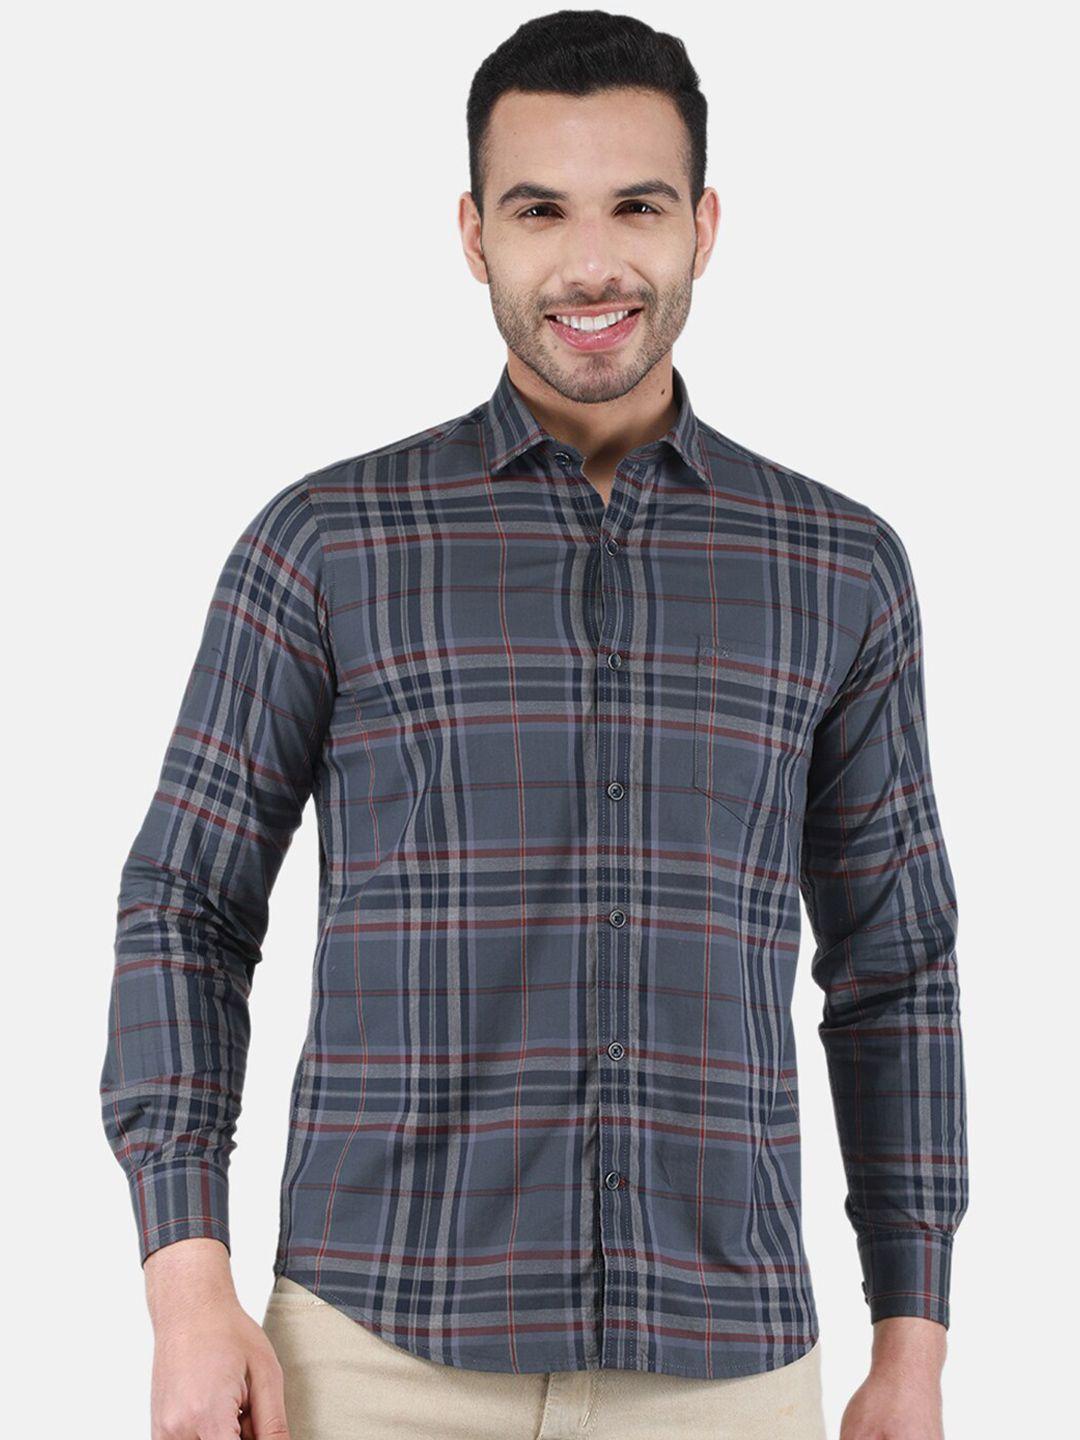 monte-carlo-tartan-checked-spread-collar-cotton-casual-shirt